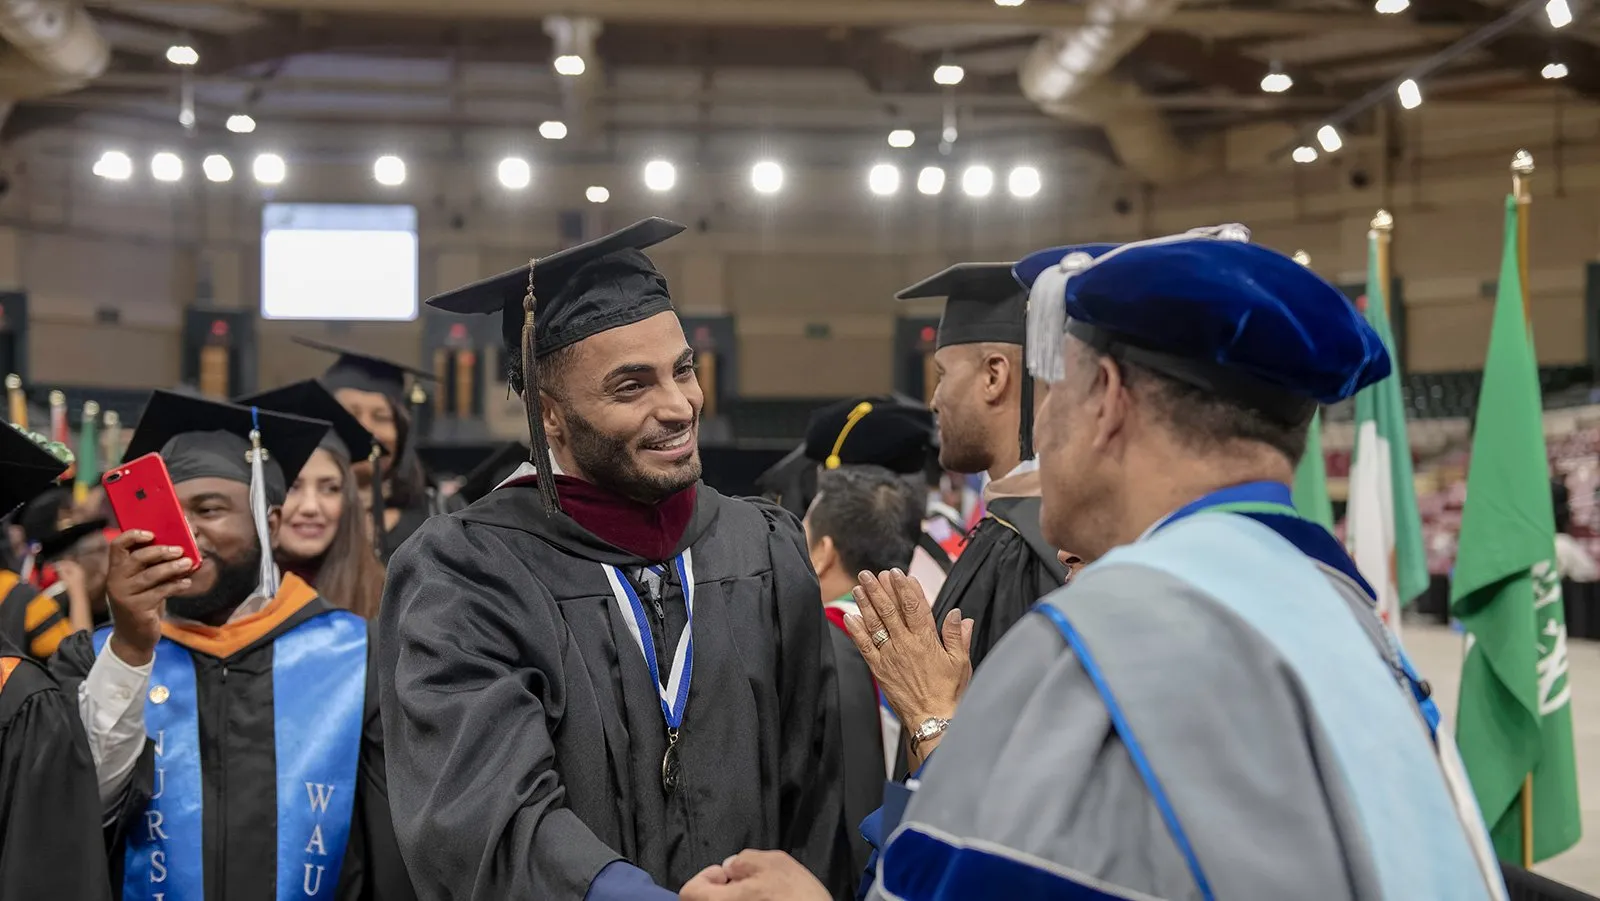 Students shaking hands at graduation